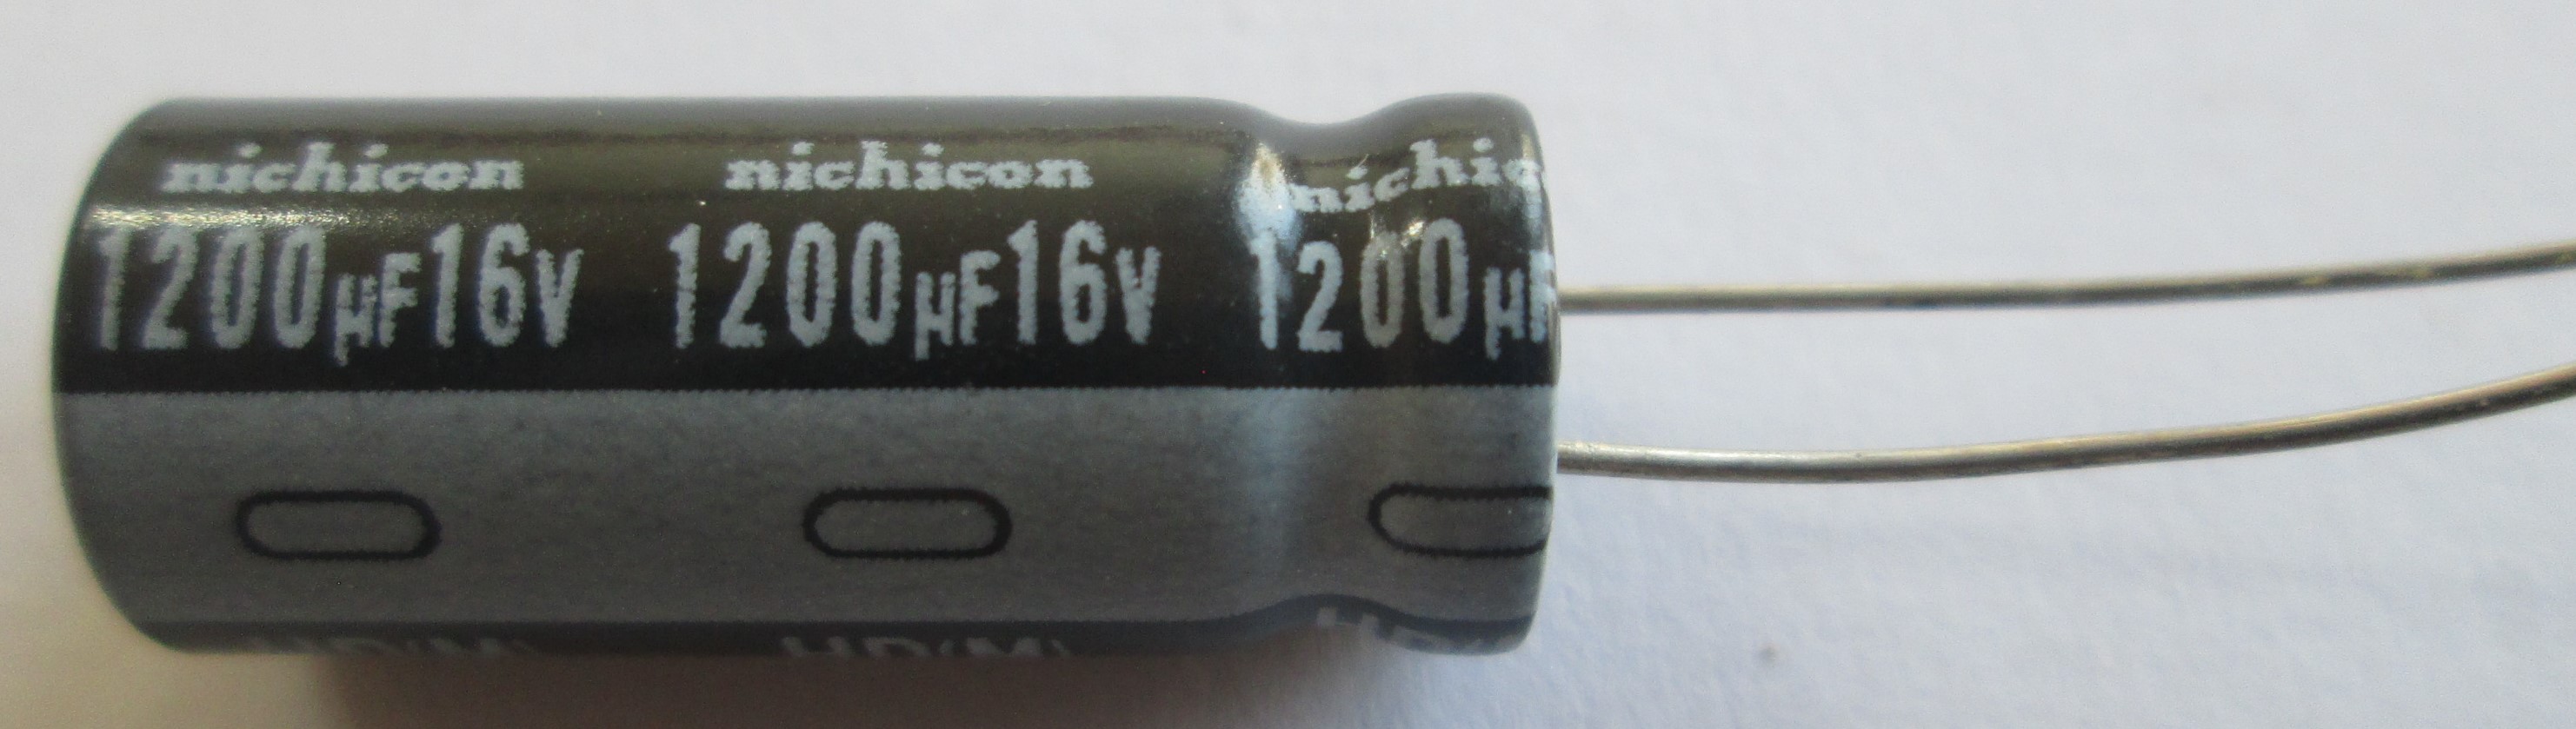 خازن الکترولیت 1200uF/16v